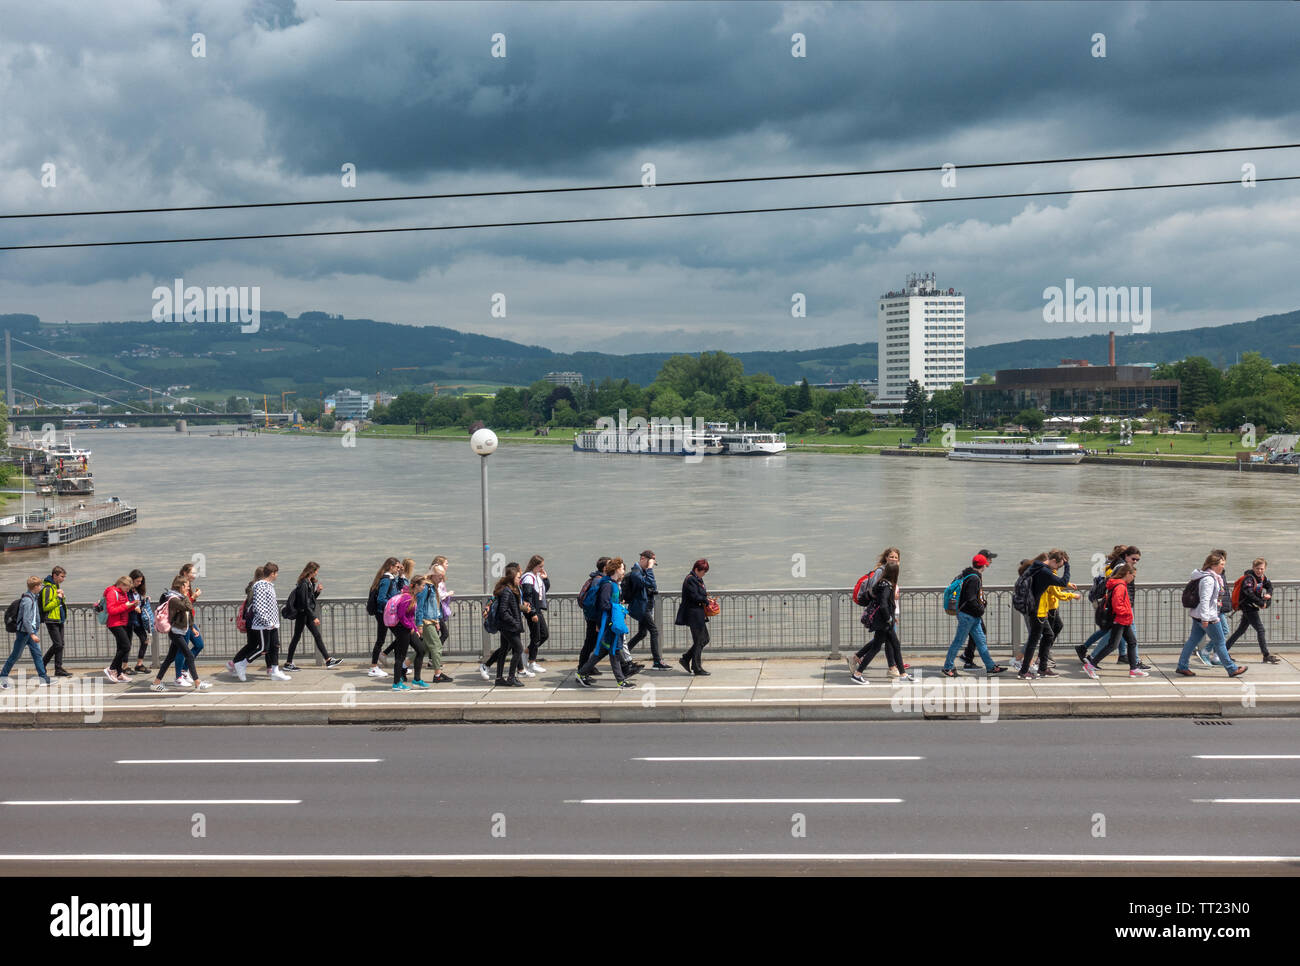 Linz Nibelungen Pont sur le Danube avec les élèves, de la rivière et les bateaux de croisière Arcotel Nike. Nibelungenbrücke Linz Österreich Autriche. Banque D'Images